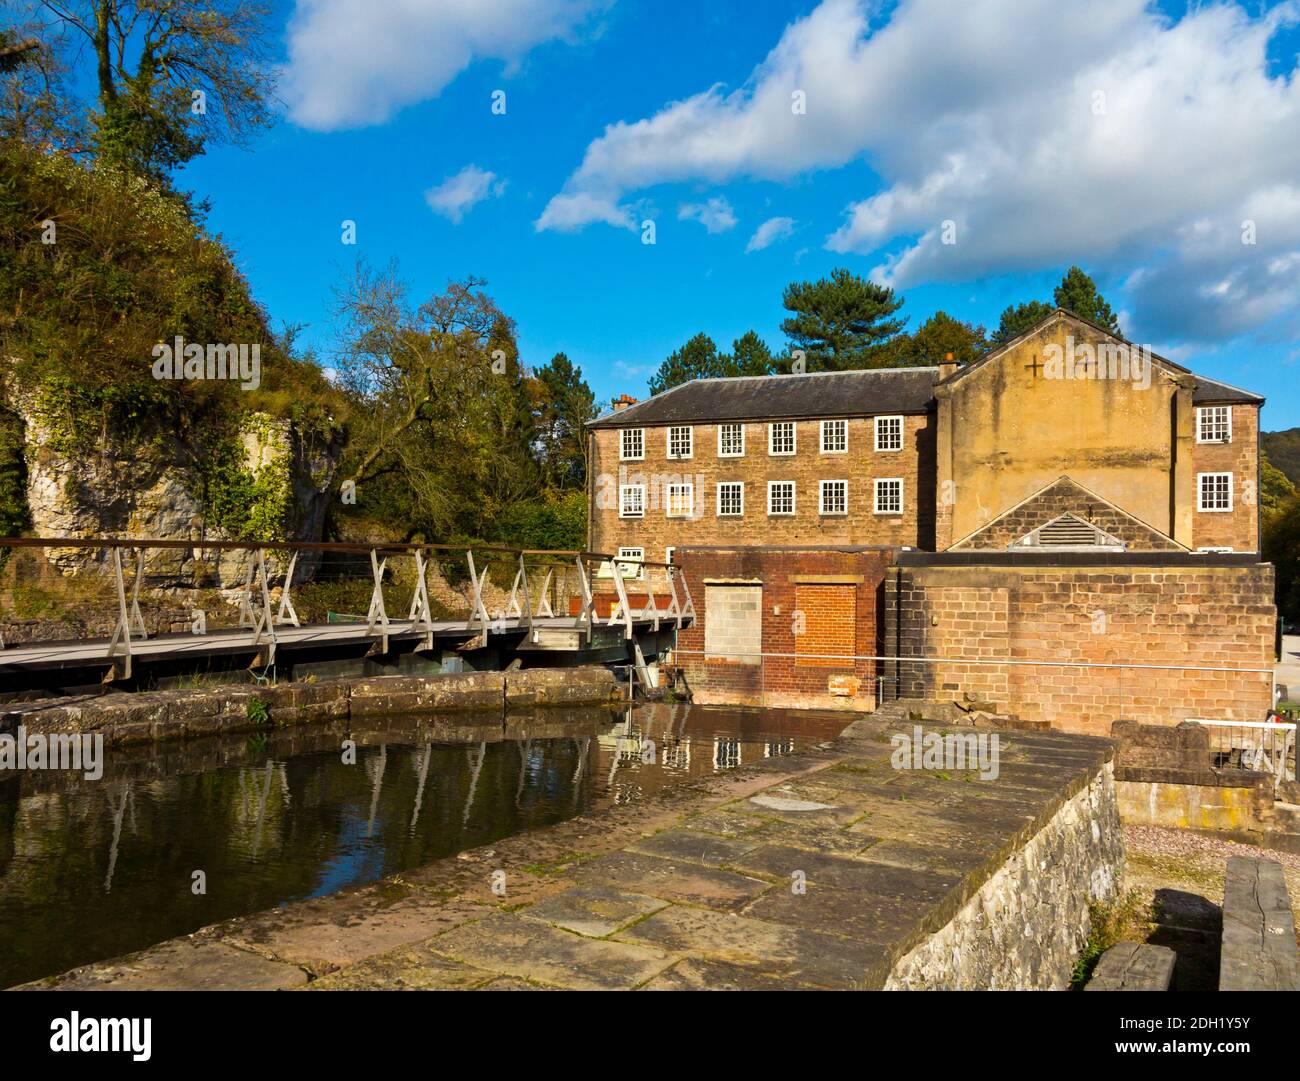 Les bâtiments d'usine de Cromford Mill, le premier au monde alimenté par l'eau Usine de coton construite par Richard Arkwright en 1771 à Cromford Derbyshire Angleterre Royaume-Uni Banque D'Images